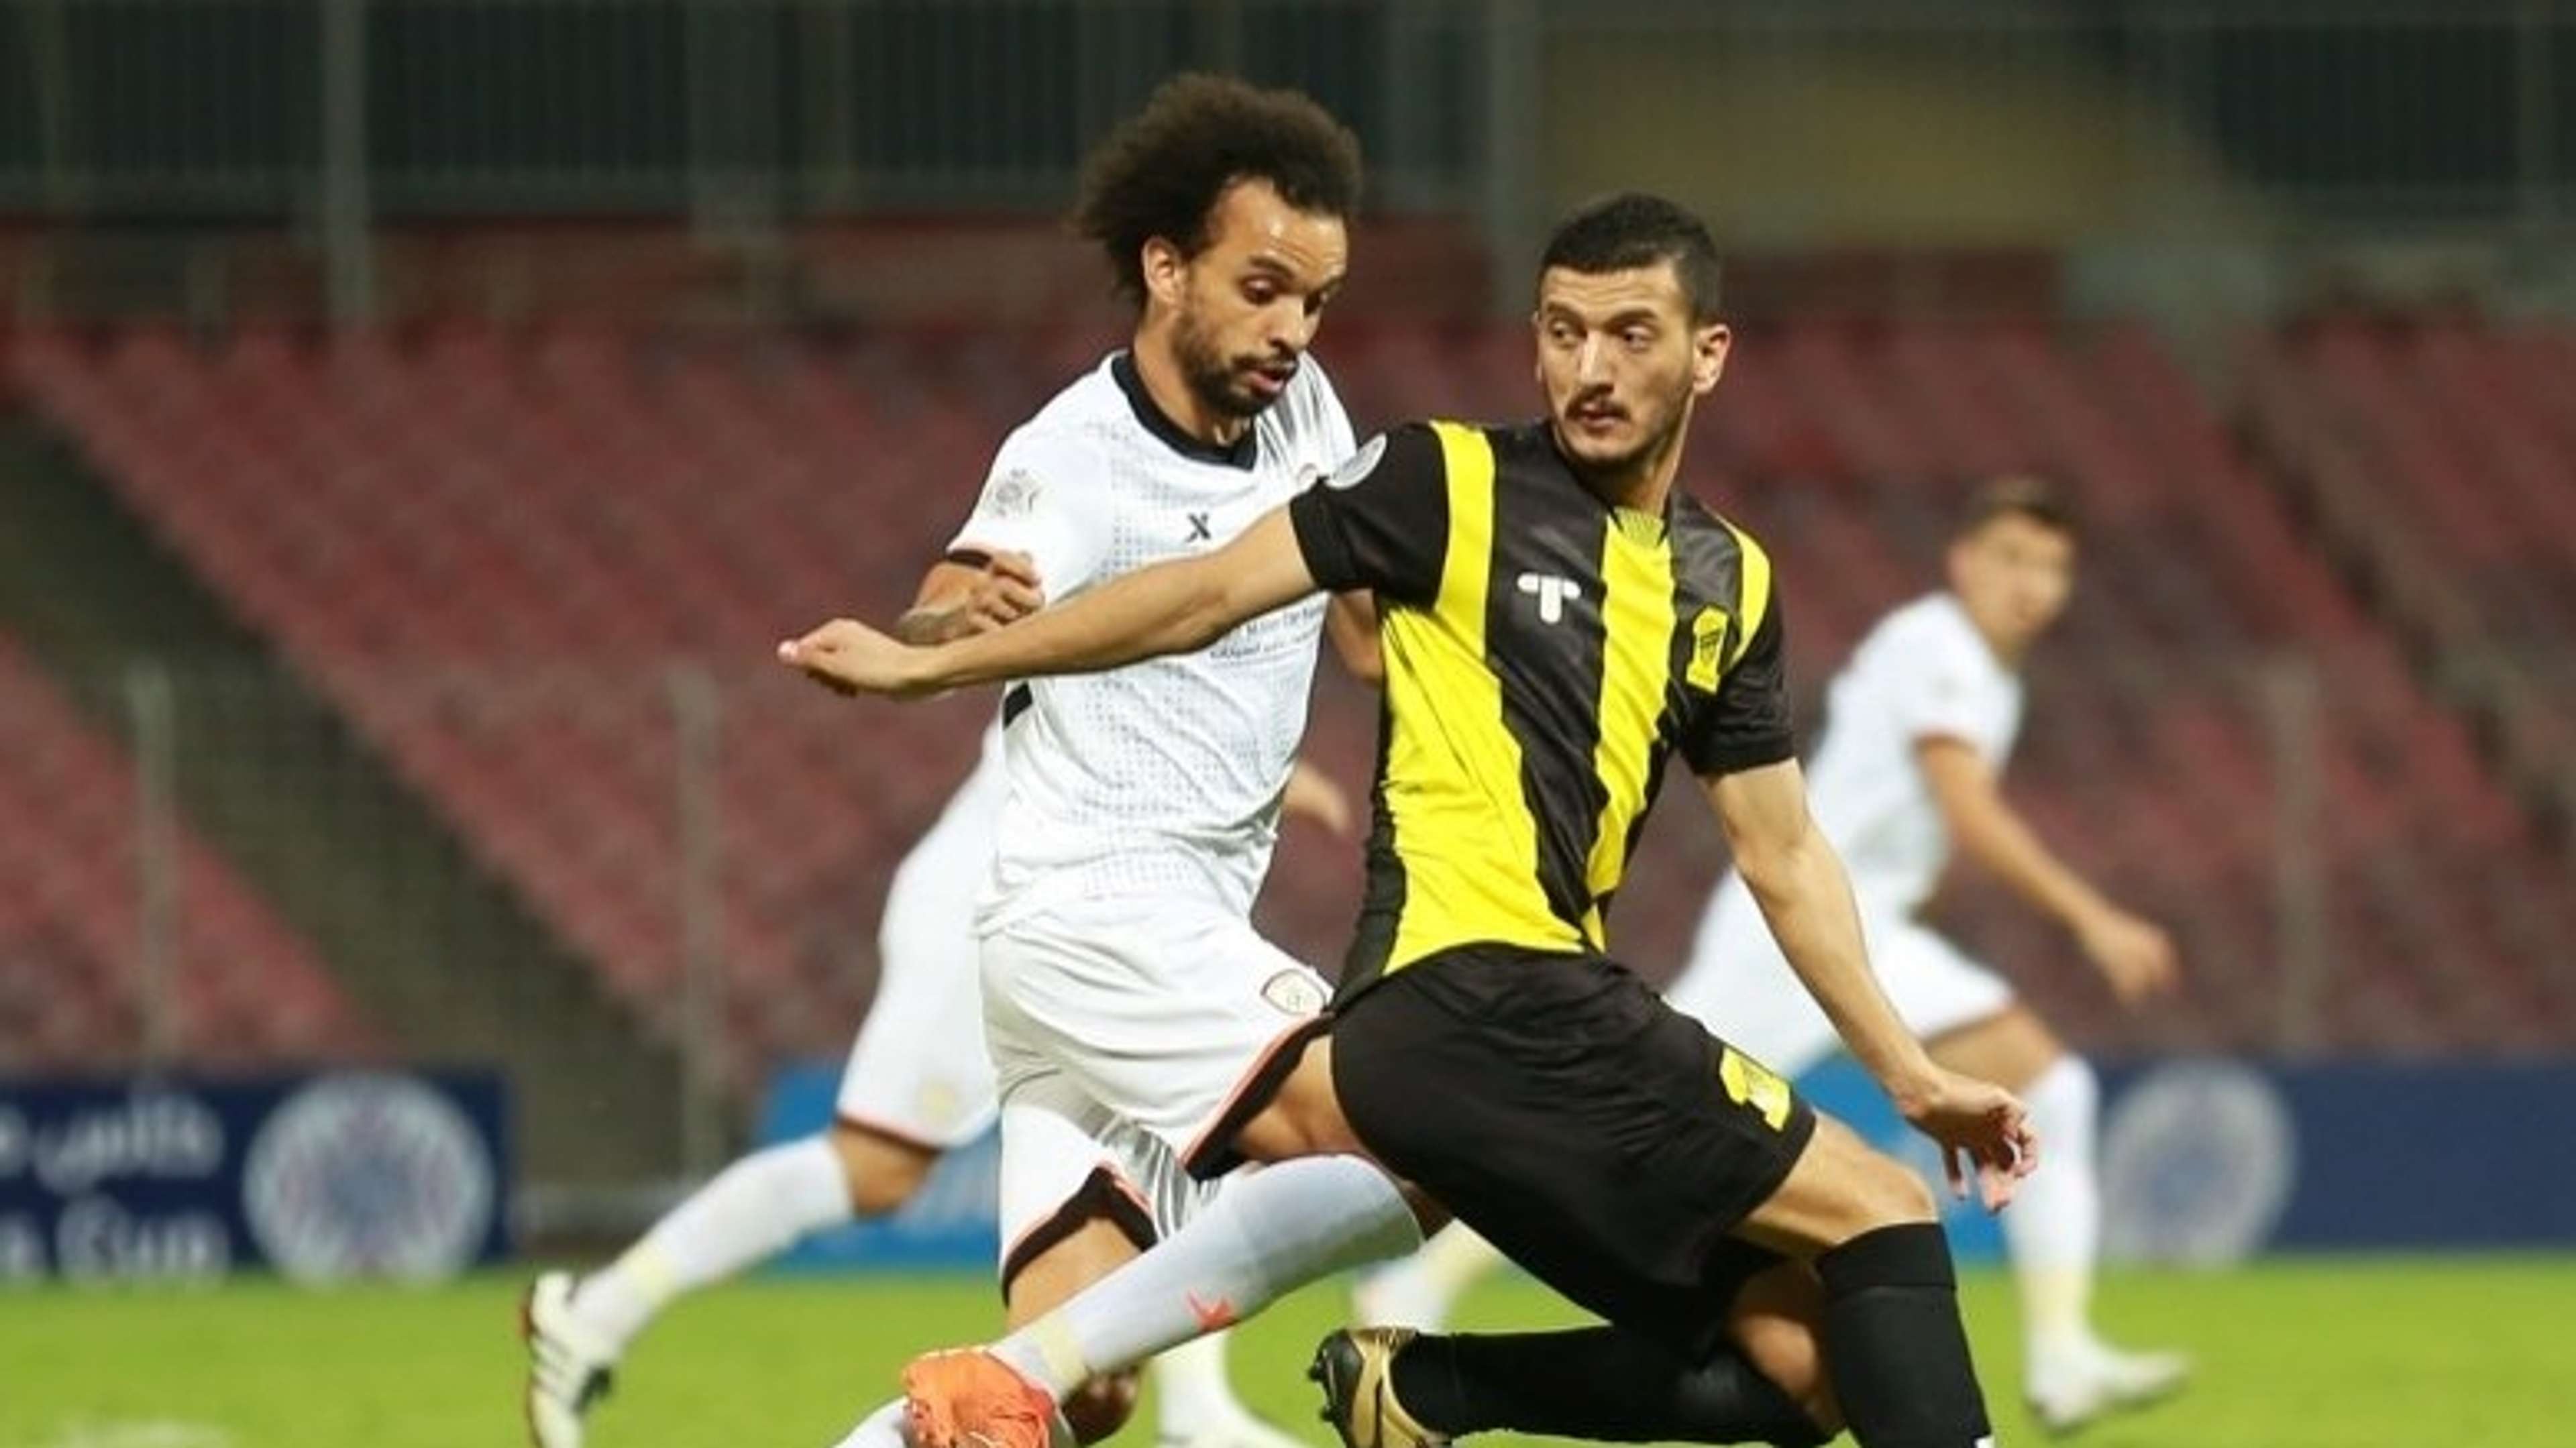 Fábio Martins - Abdulellah Al Malki – ittihad – shabab - Arab Club Championship 4-1-2021